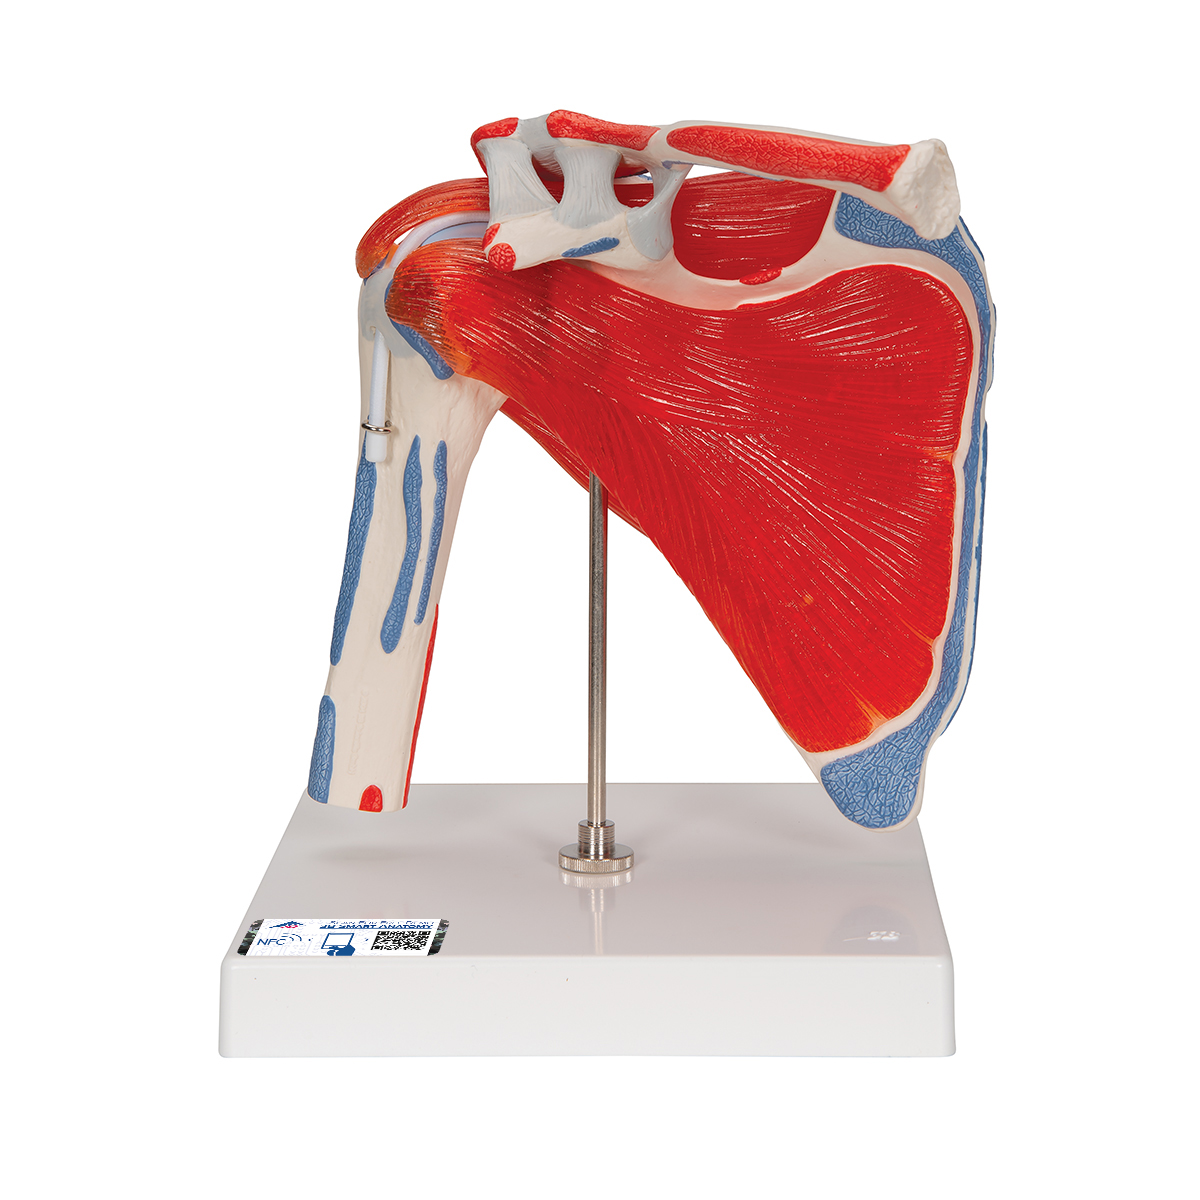 Schultergelenkmodell mit Rotatorenmanschette (4 abnehmbare Muskeln), 5 - teilig - 3B Smart Anatomy, Bestellnummer 1000176, A880, 3B Scientific